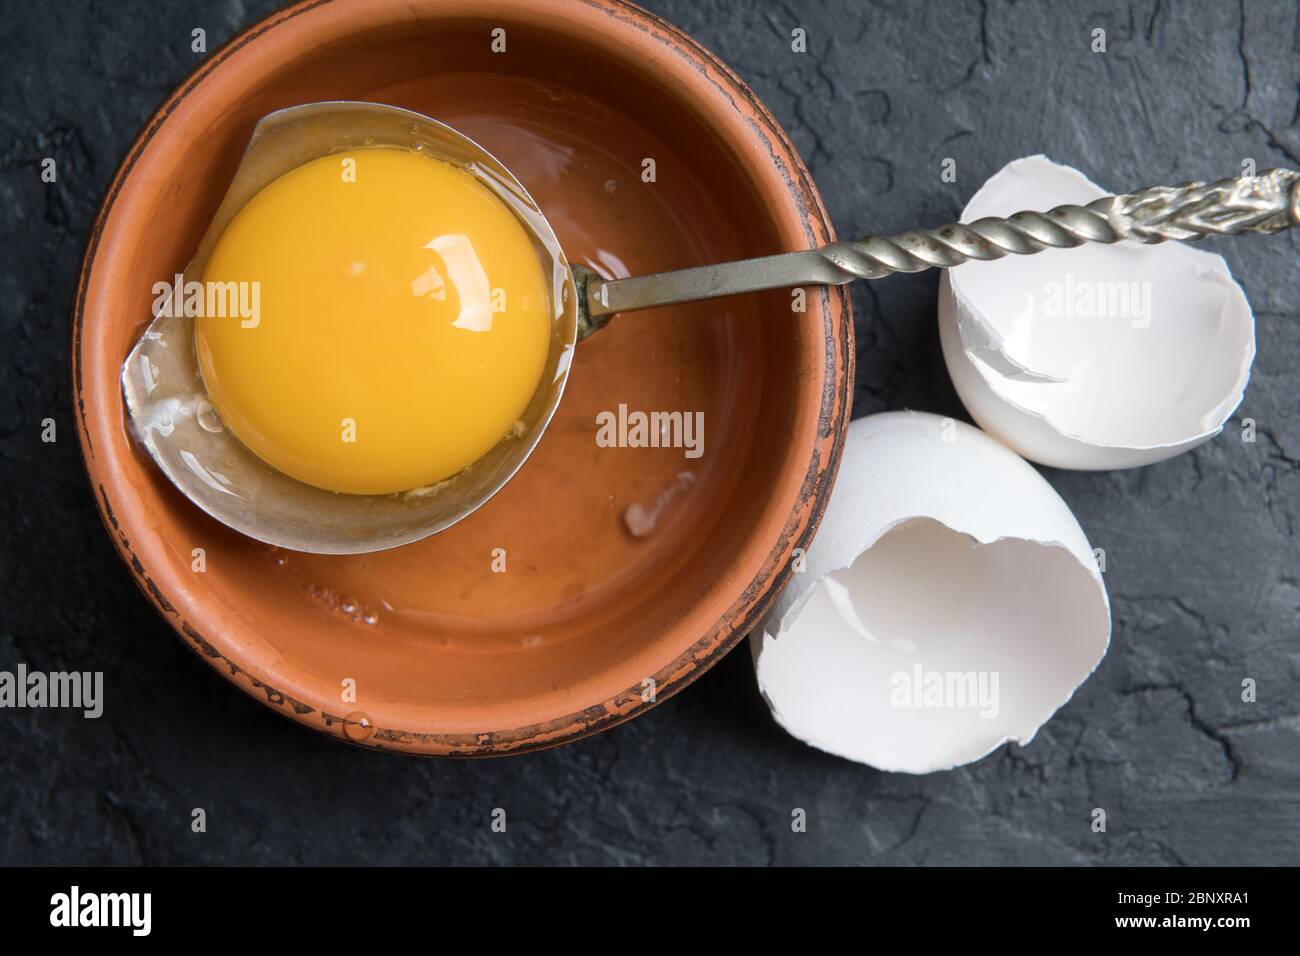 Jaune de poulet provenant d'œufs biologiques cassés dans une plaque brune sur fond de béton noir. Photographie alimentaire Banque D'Images